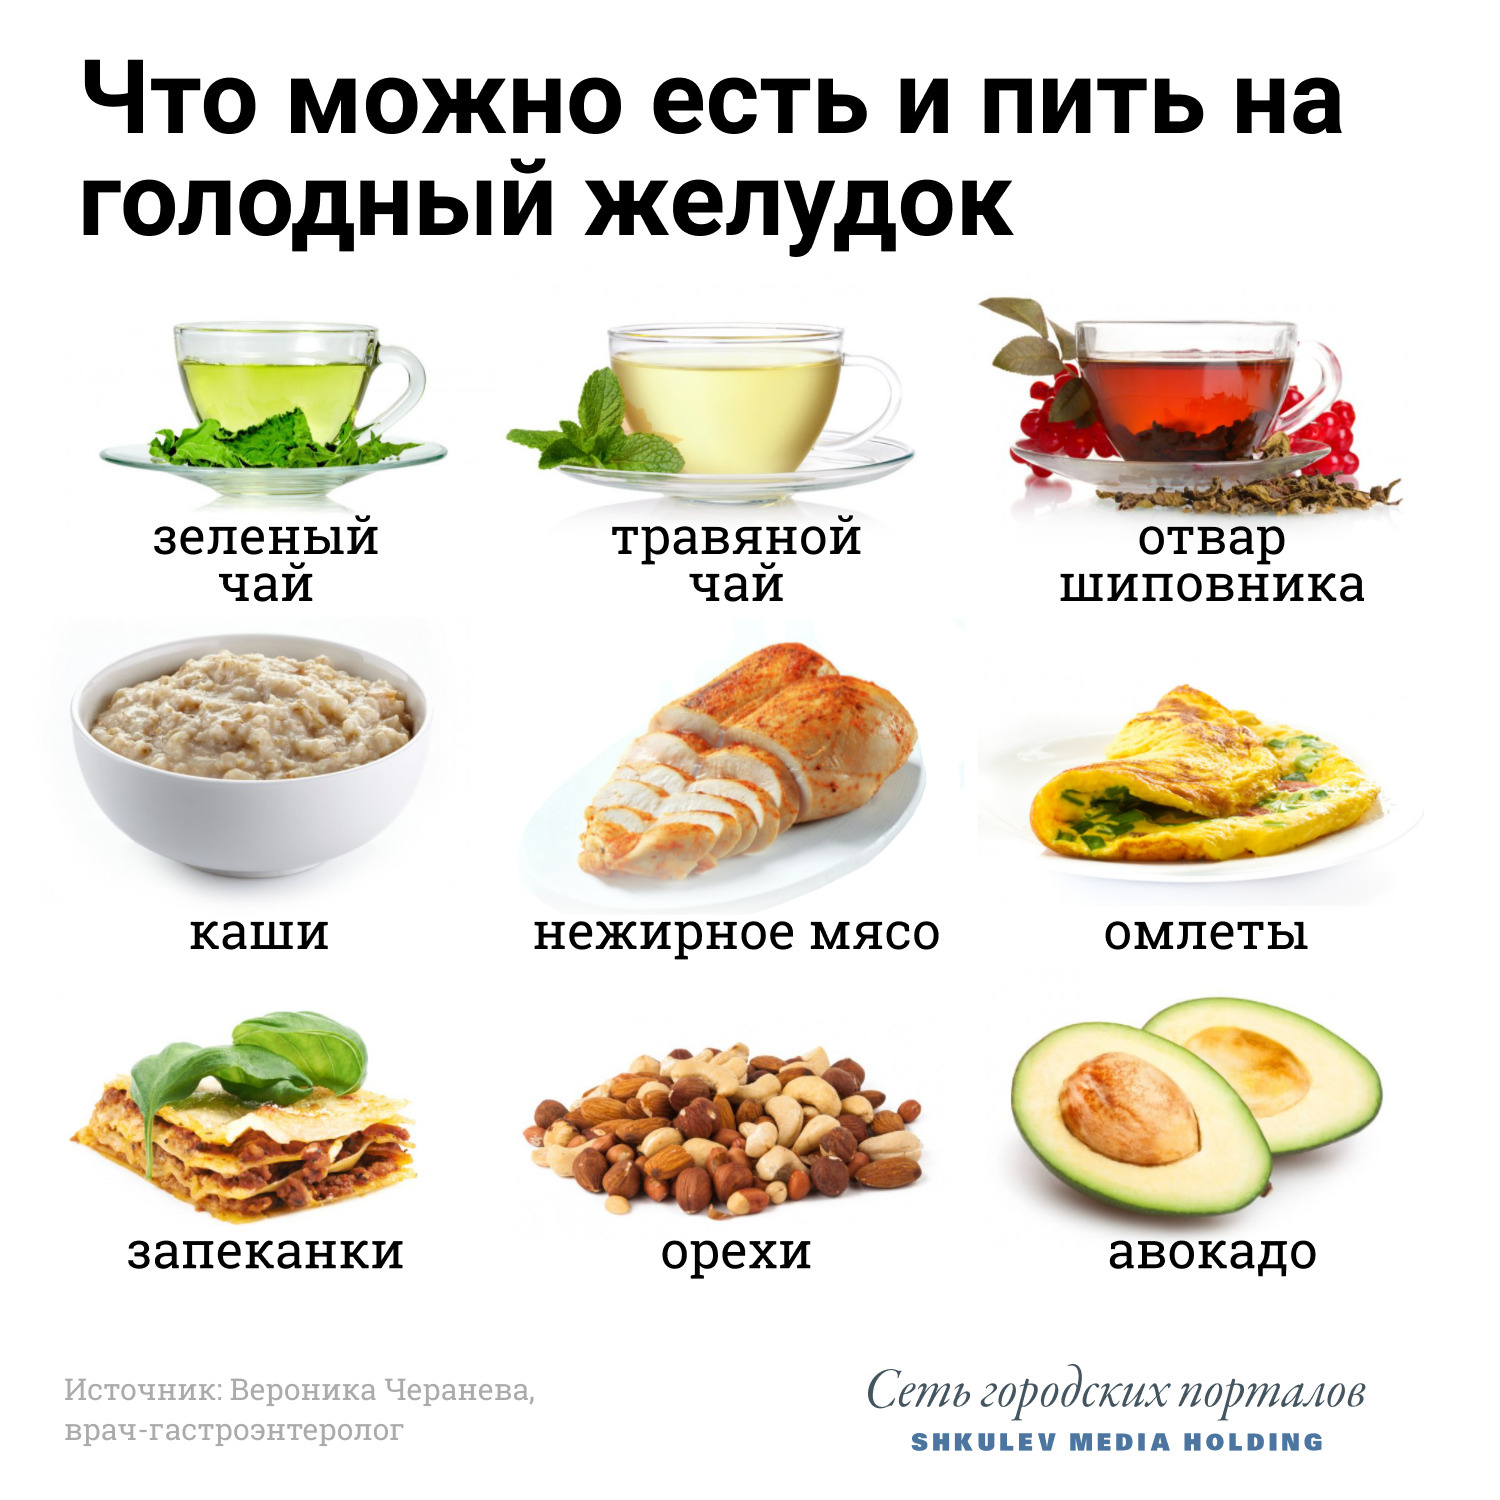 Что нельзя есть на голодный желудок — список продуктов - 18 апреля 2021 - 59.ru